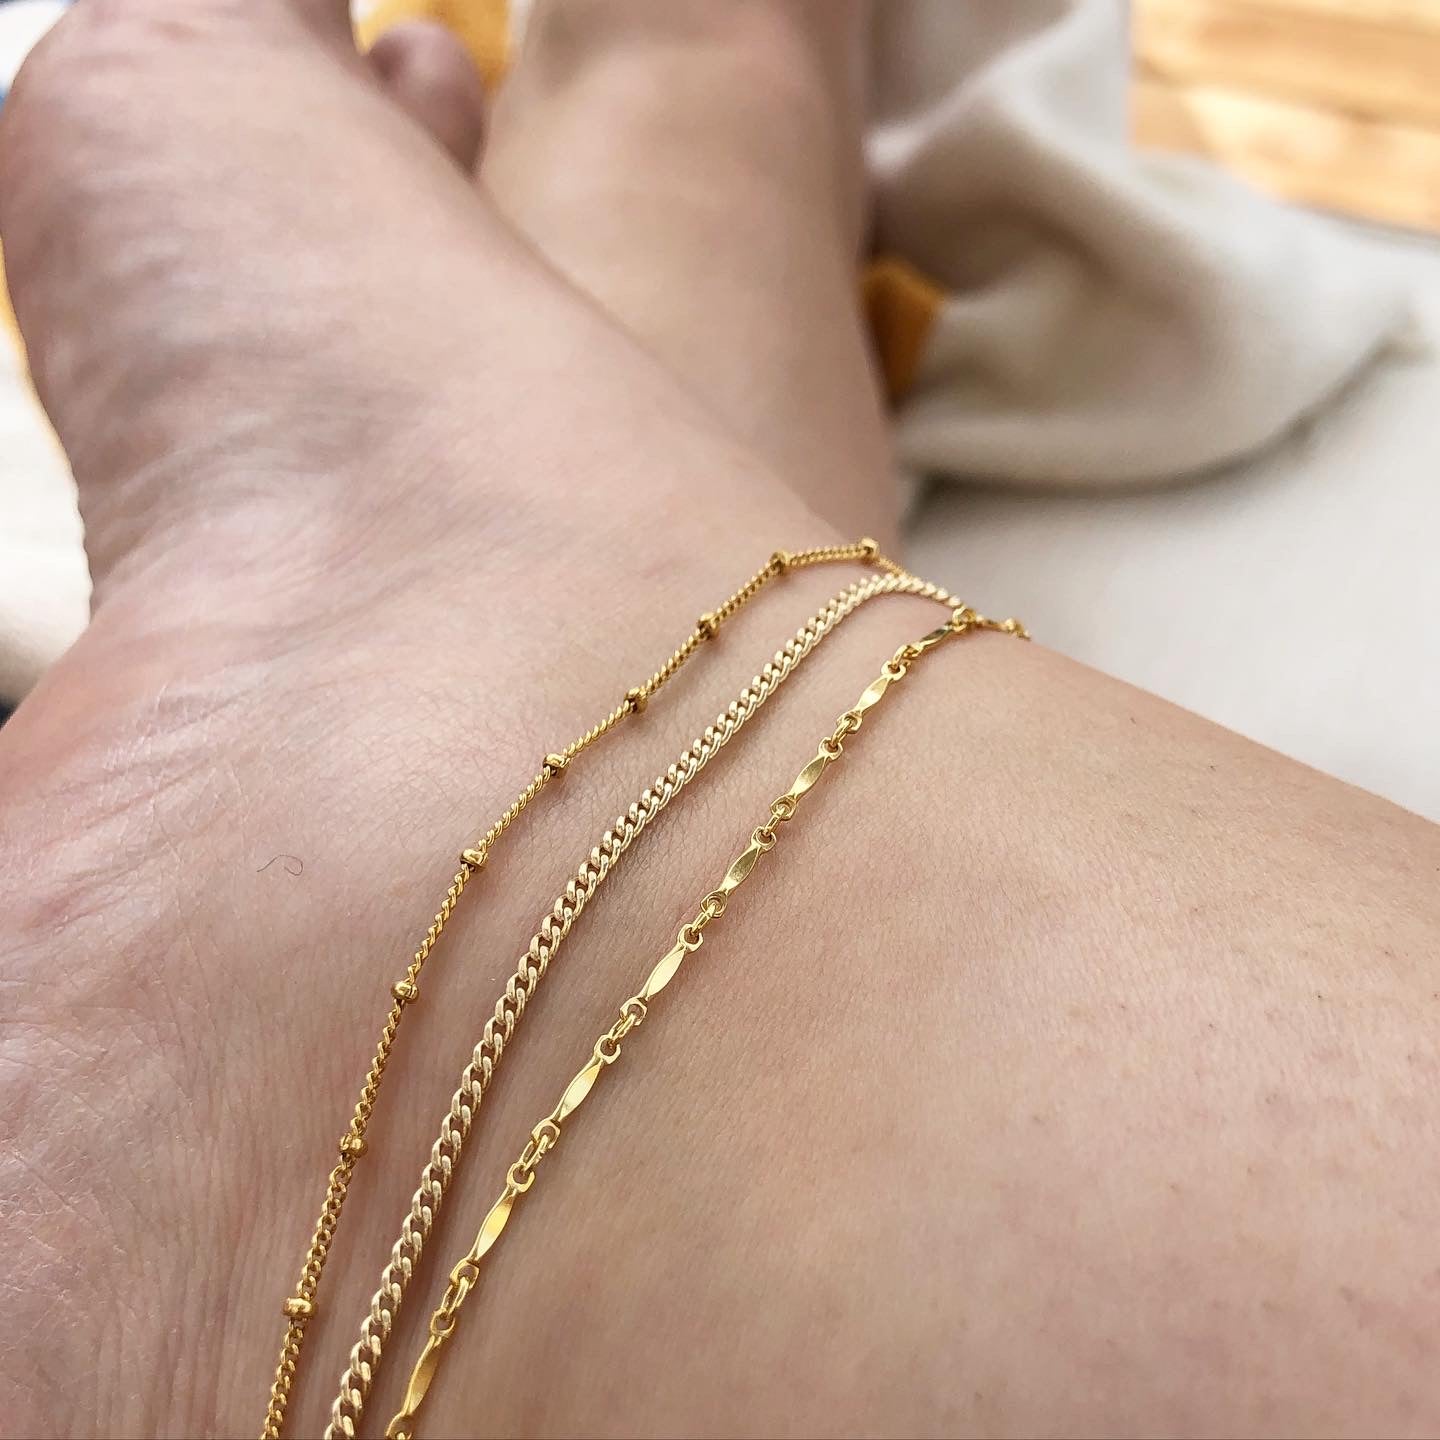 strut jewelry 14k gold fill anklet 